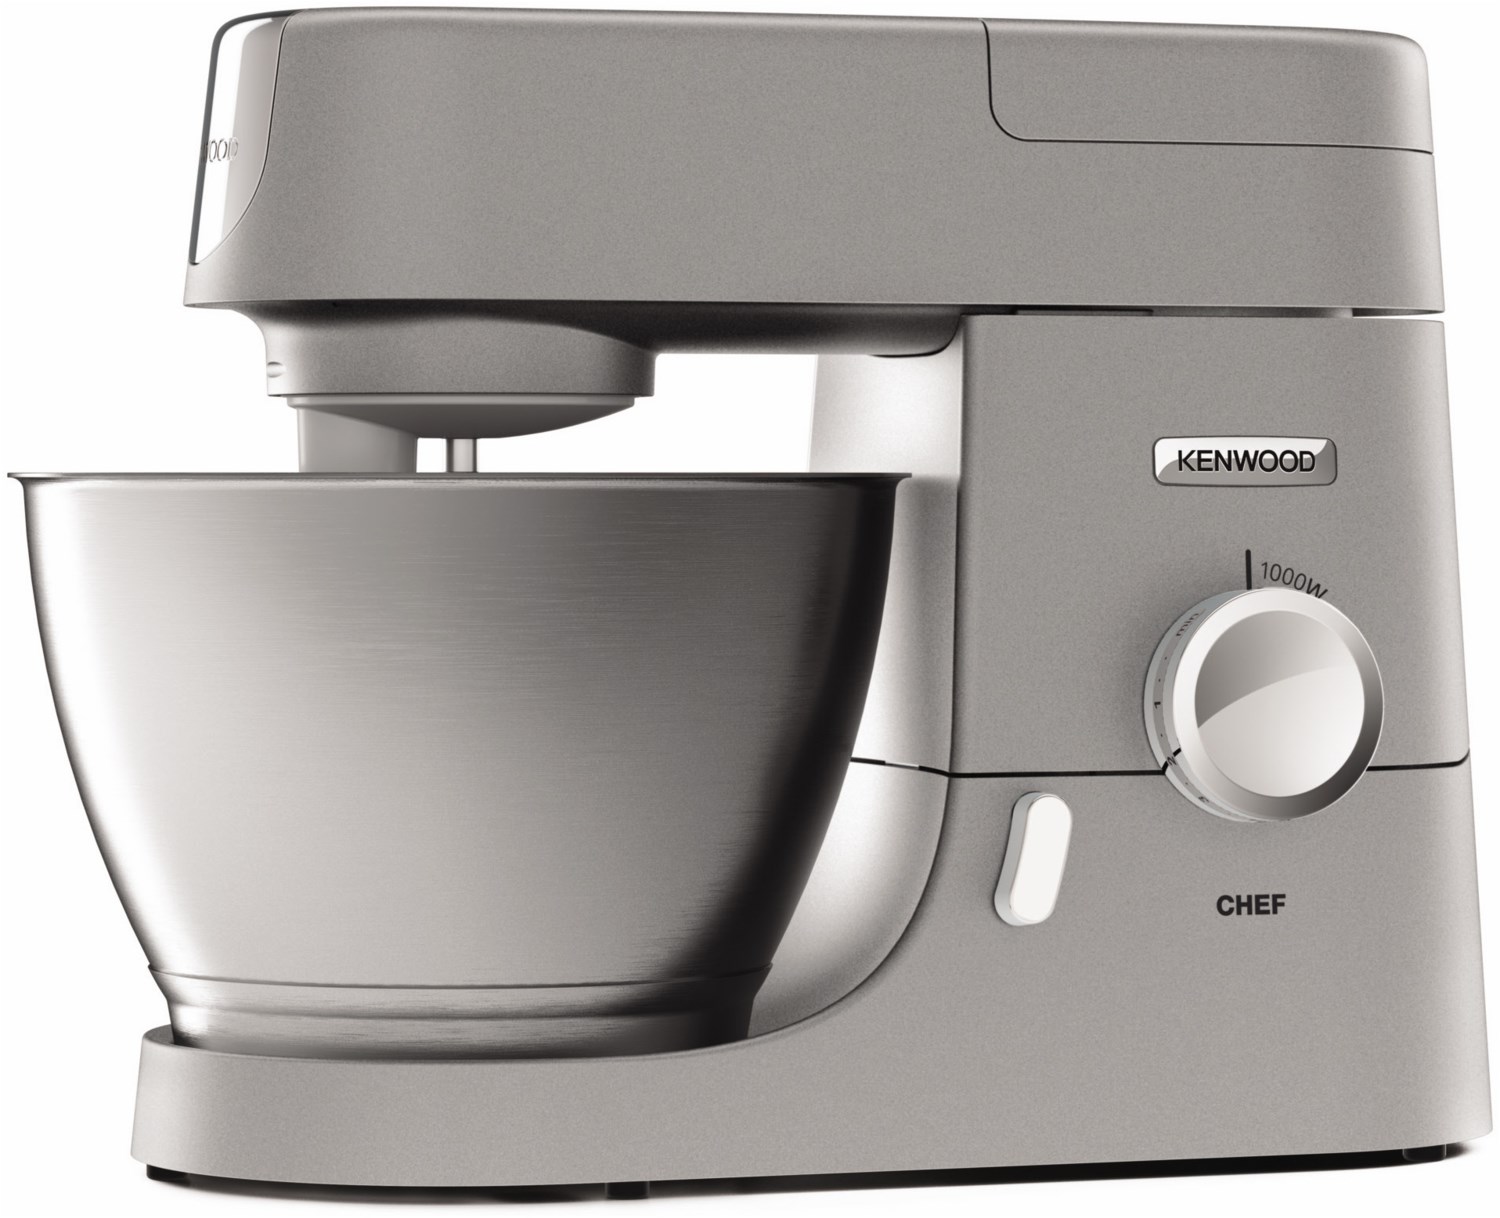 Kenwood KVC3150S Chef Küchenmaschine silber  - Onlineshop EURONICS